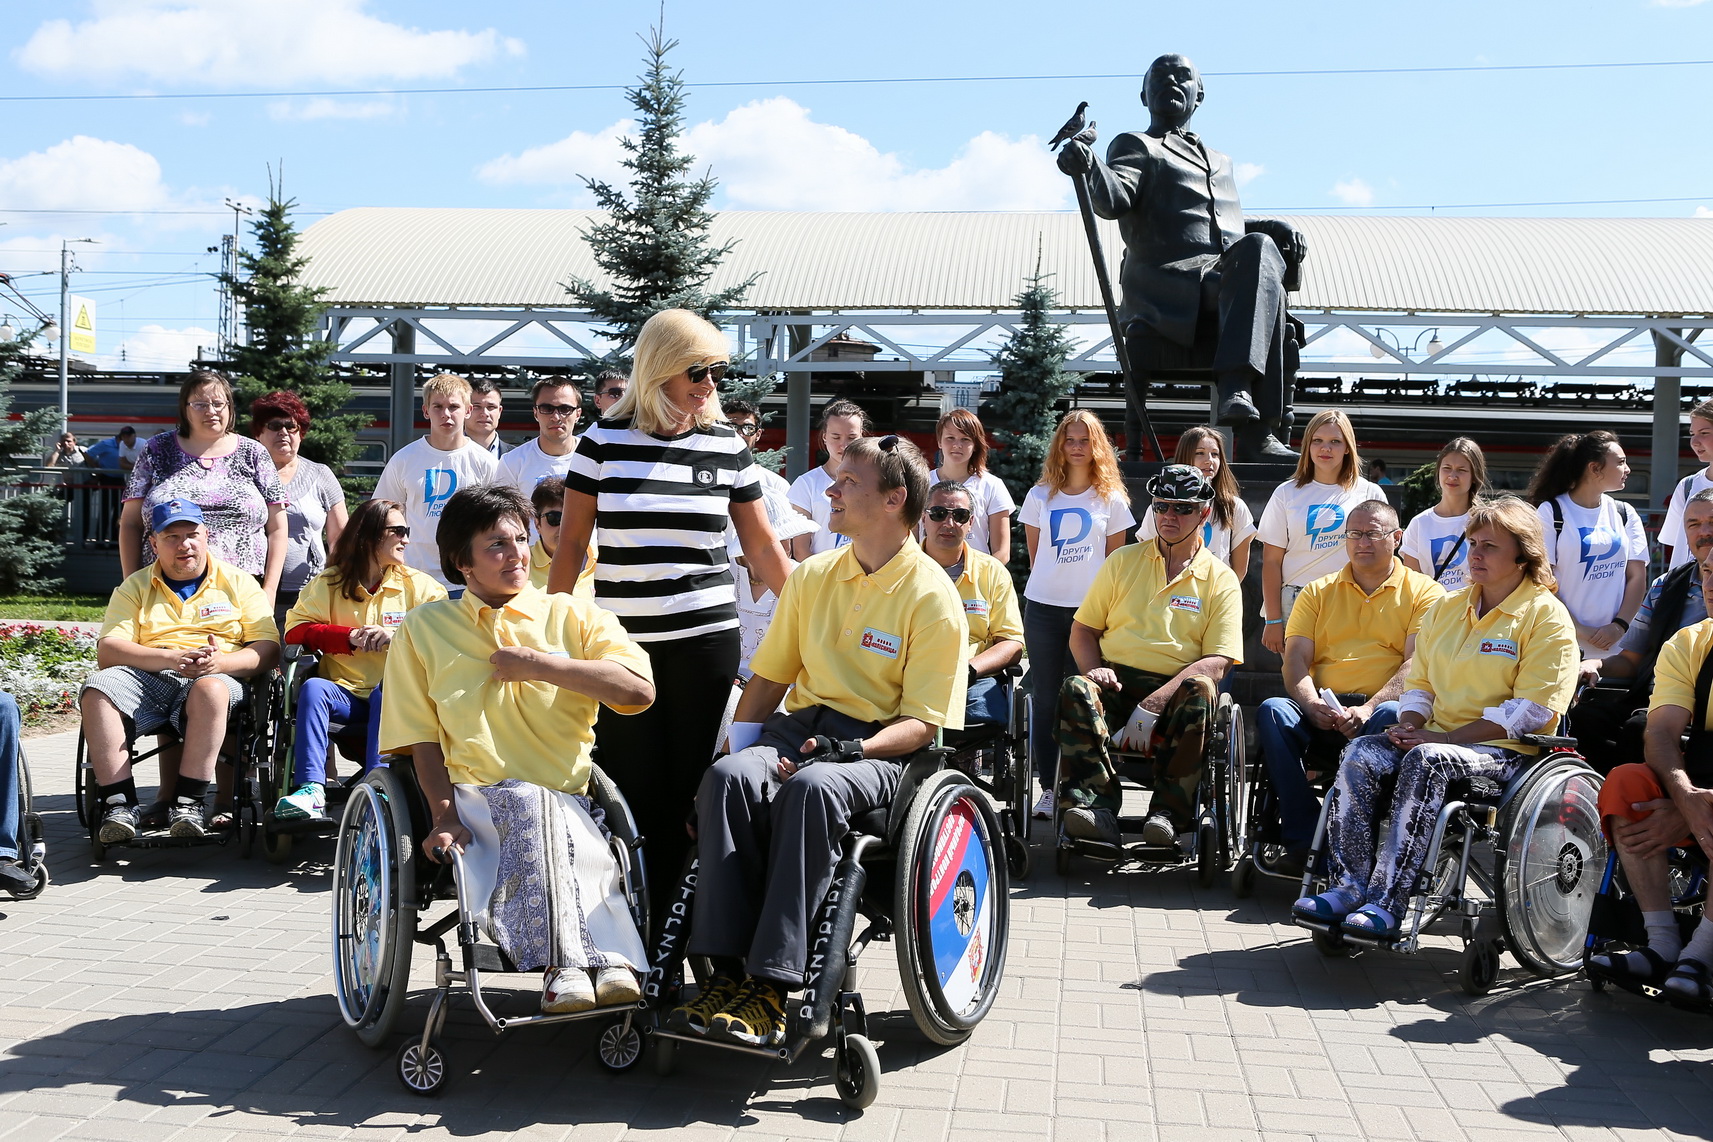 Сайт Знакомств Днепропетровск Для Инвалидов